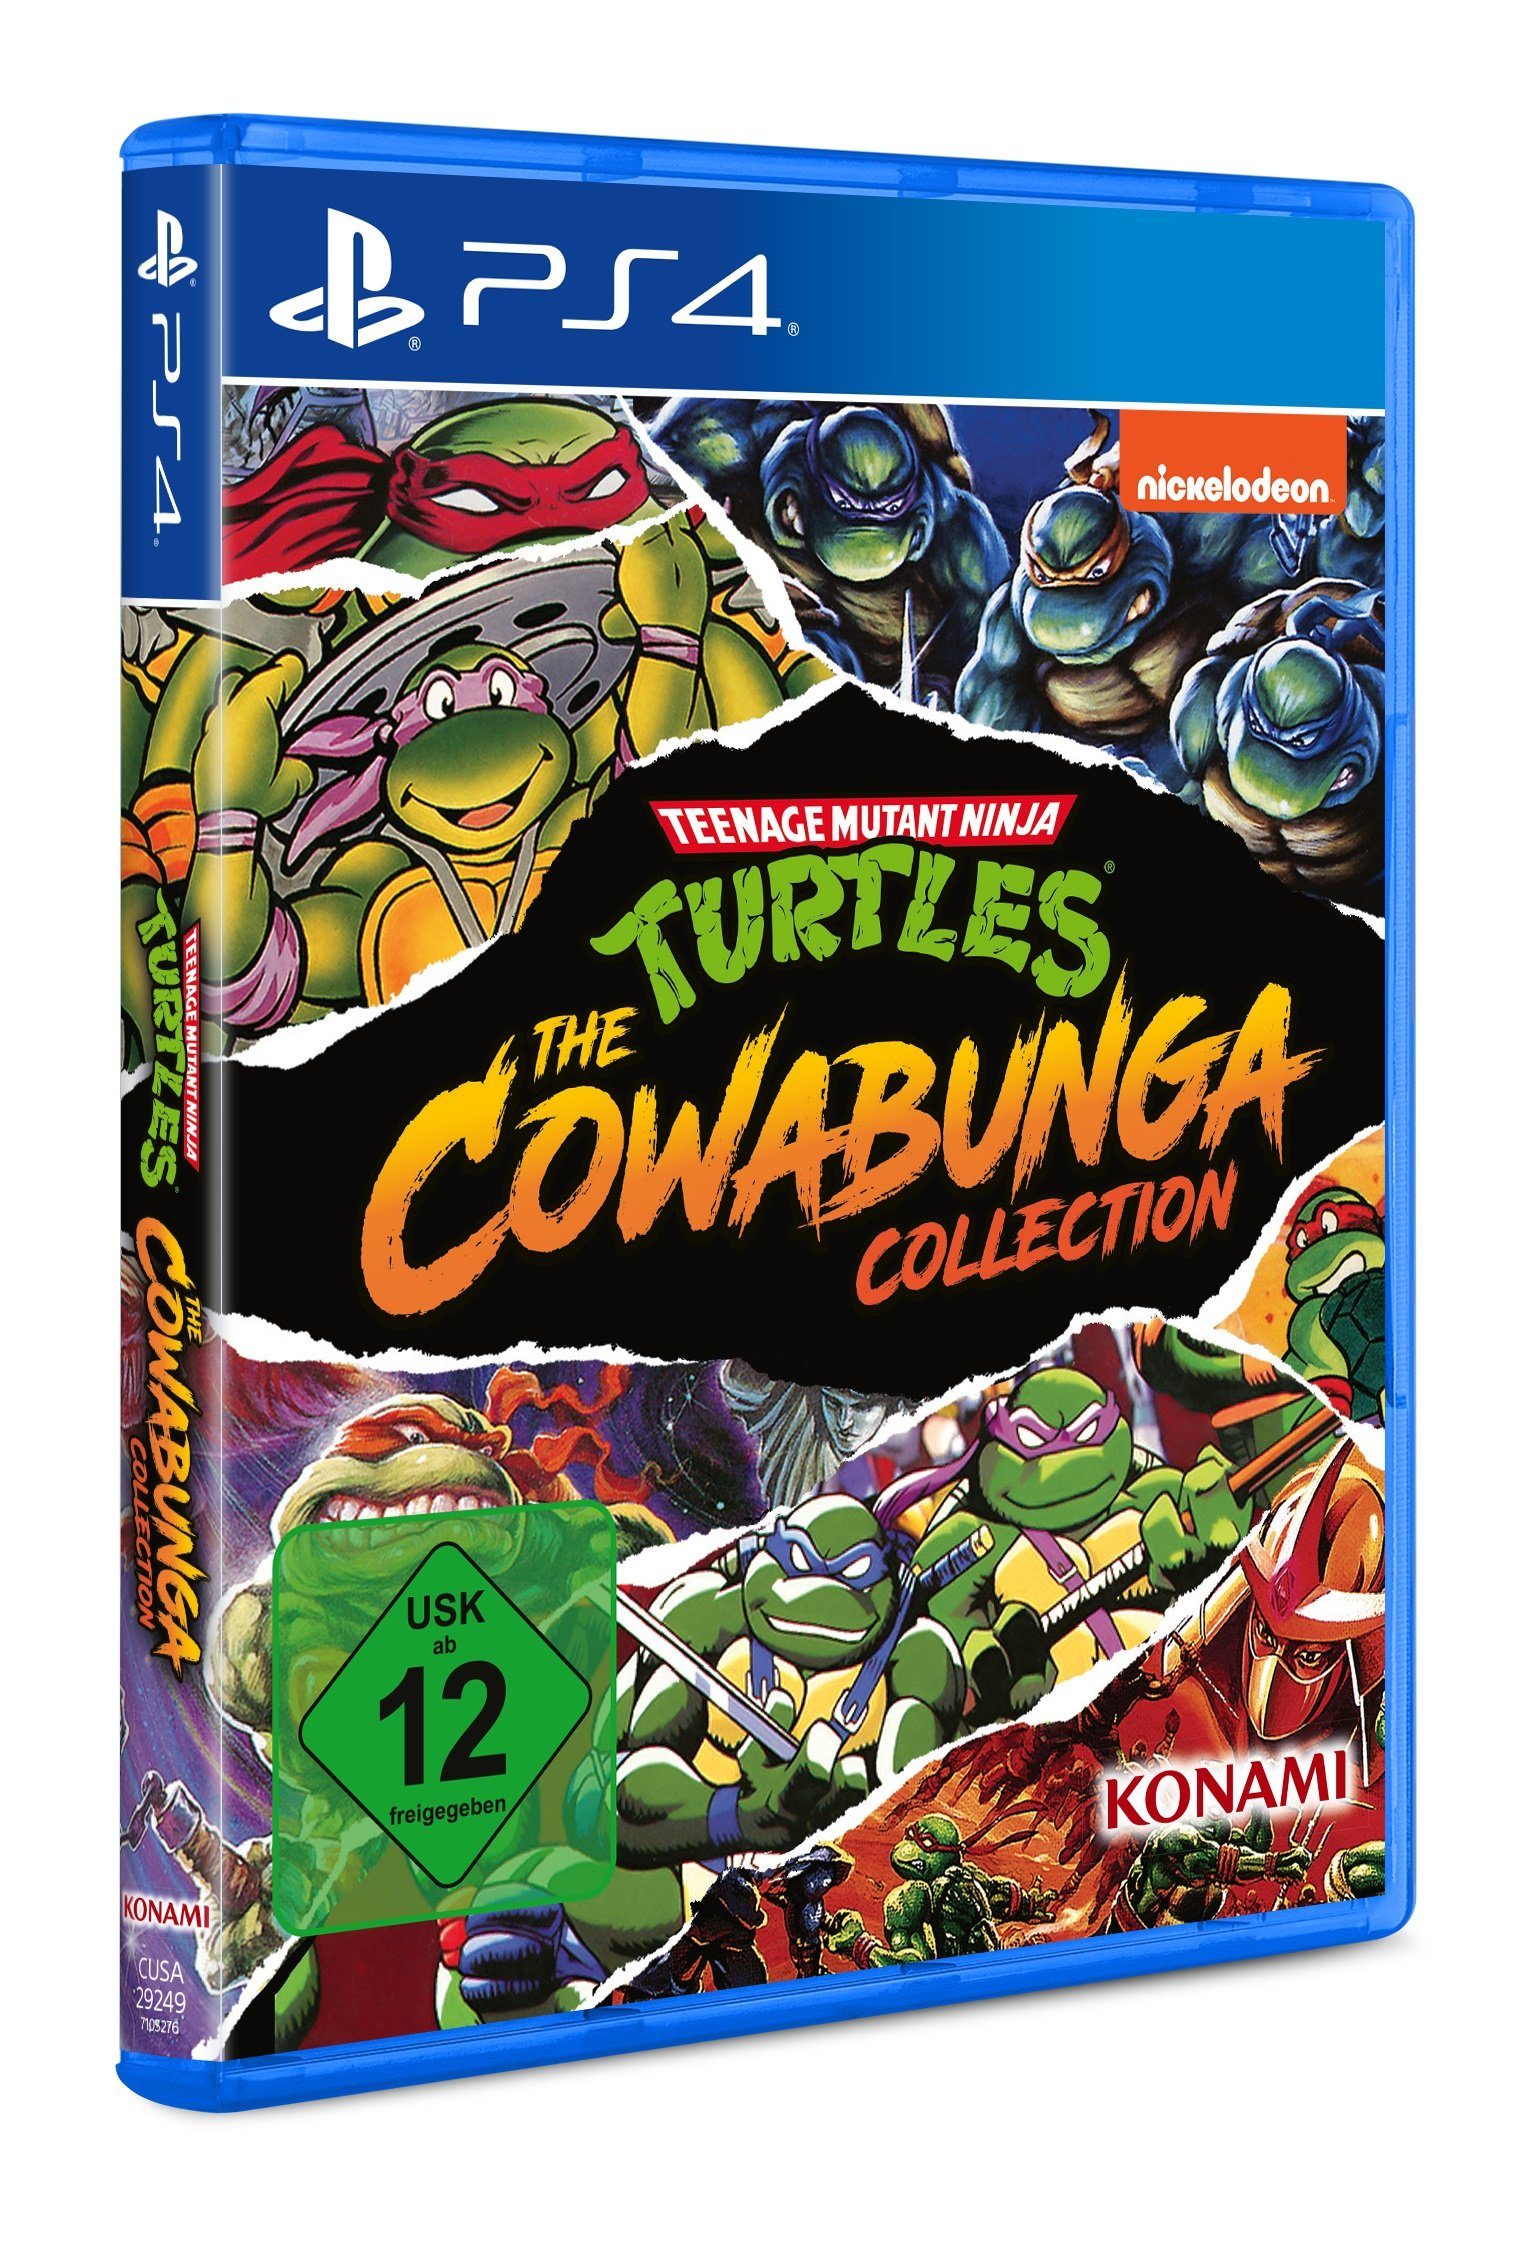 Konami Teenage Mutant Ninja The Turtles PlayStation - Cowabunga 4 Collection